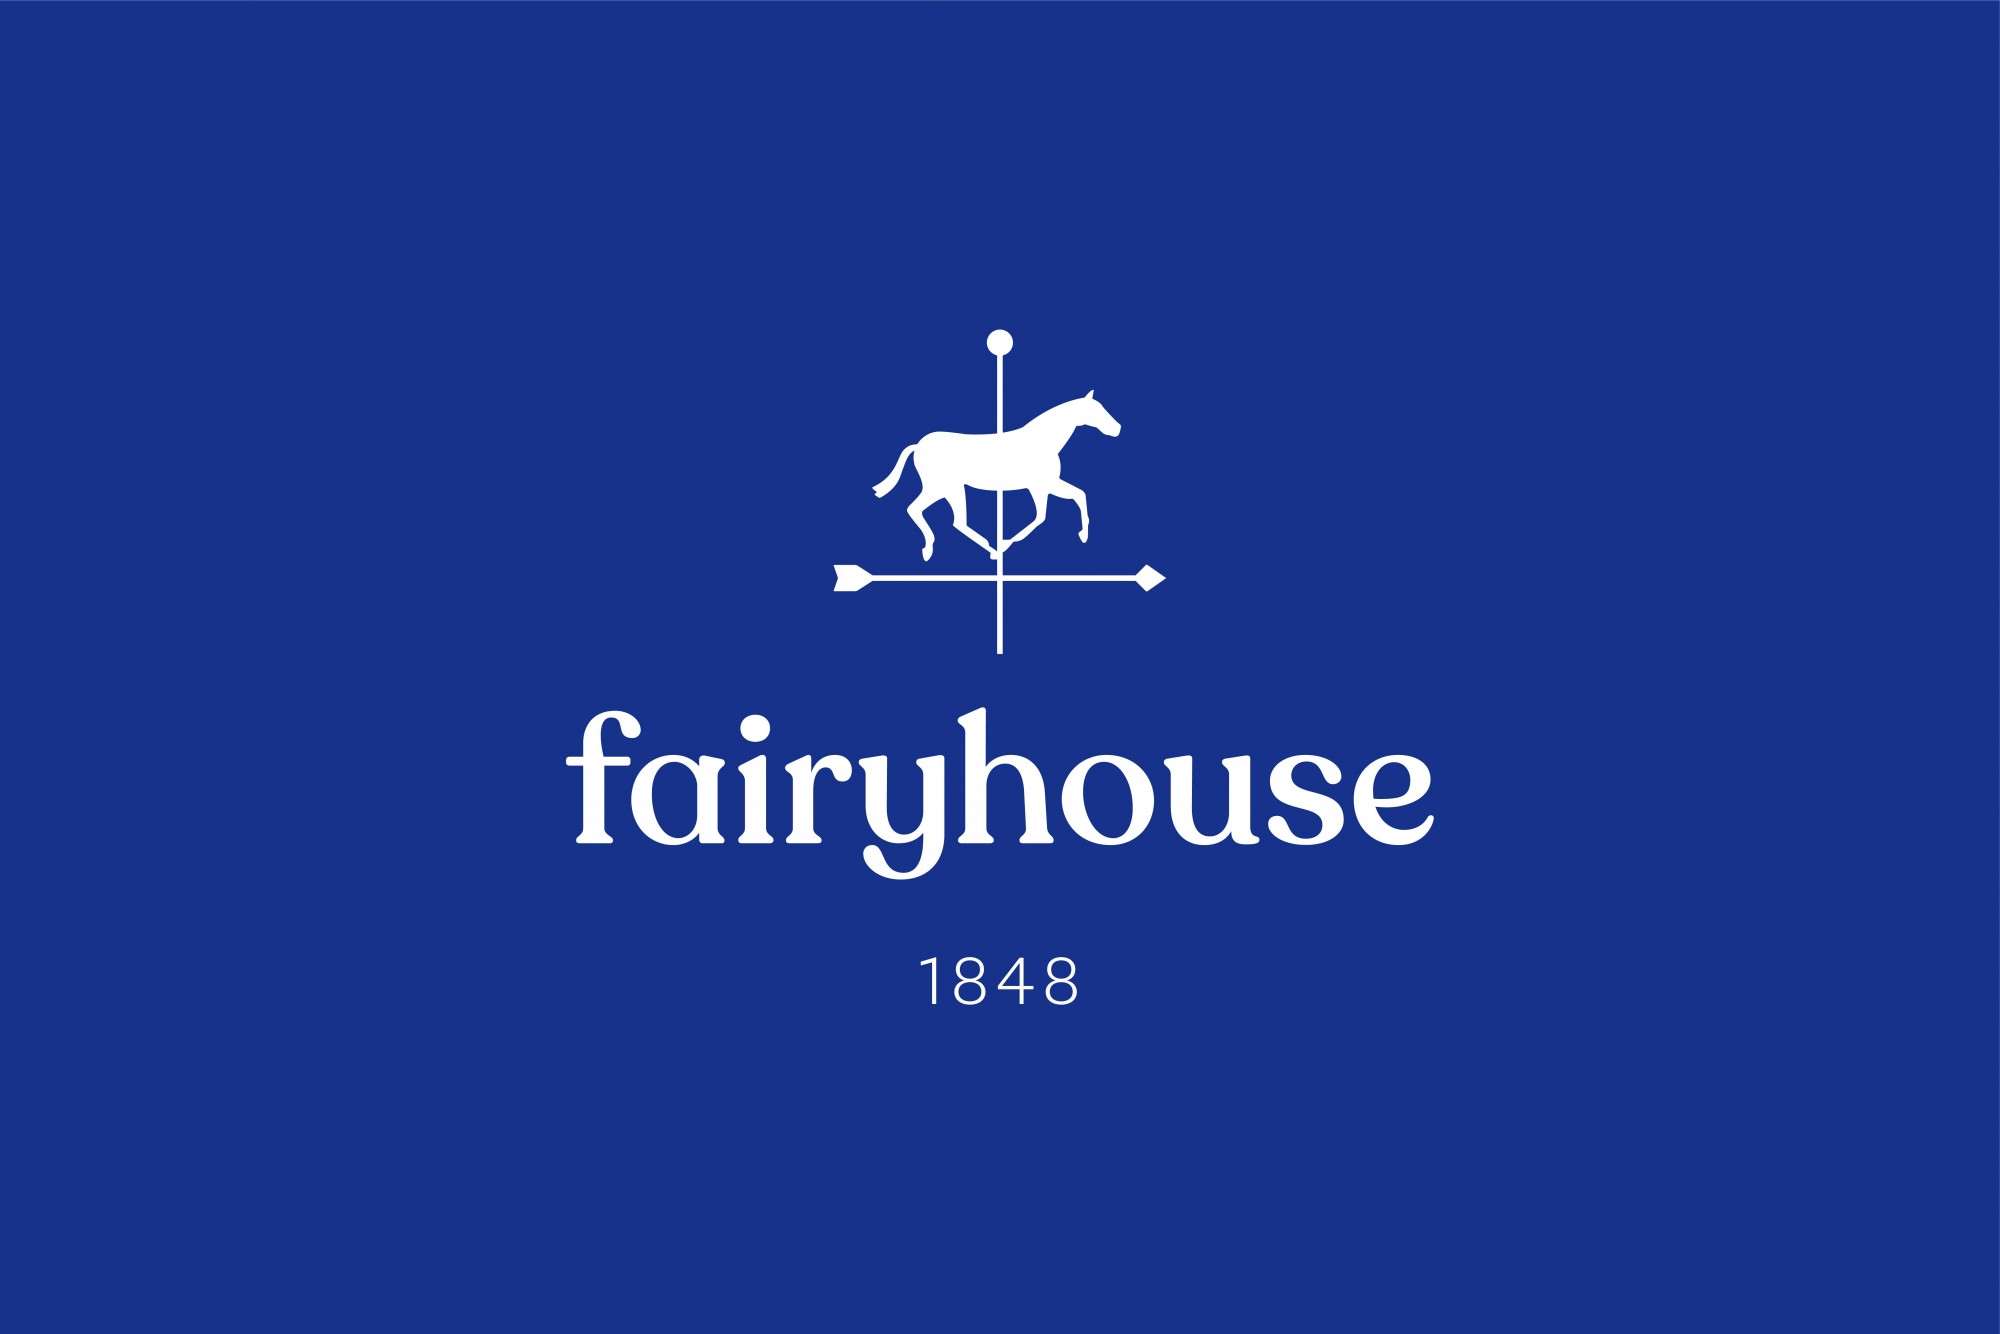 Cover image: Fairyhouse Racecourse